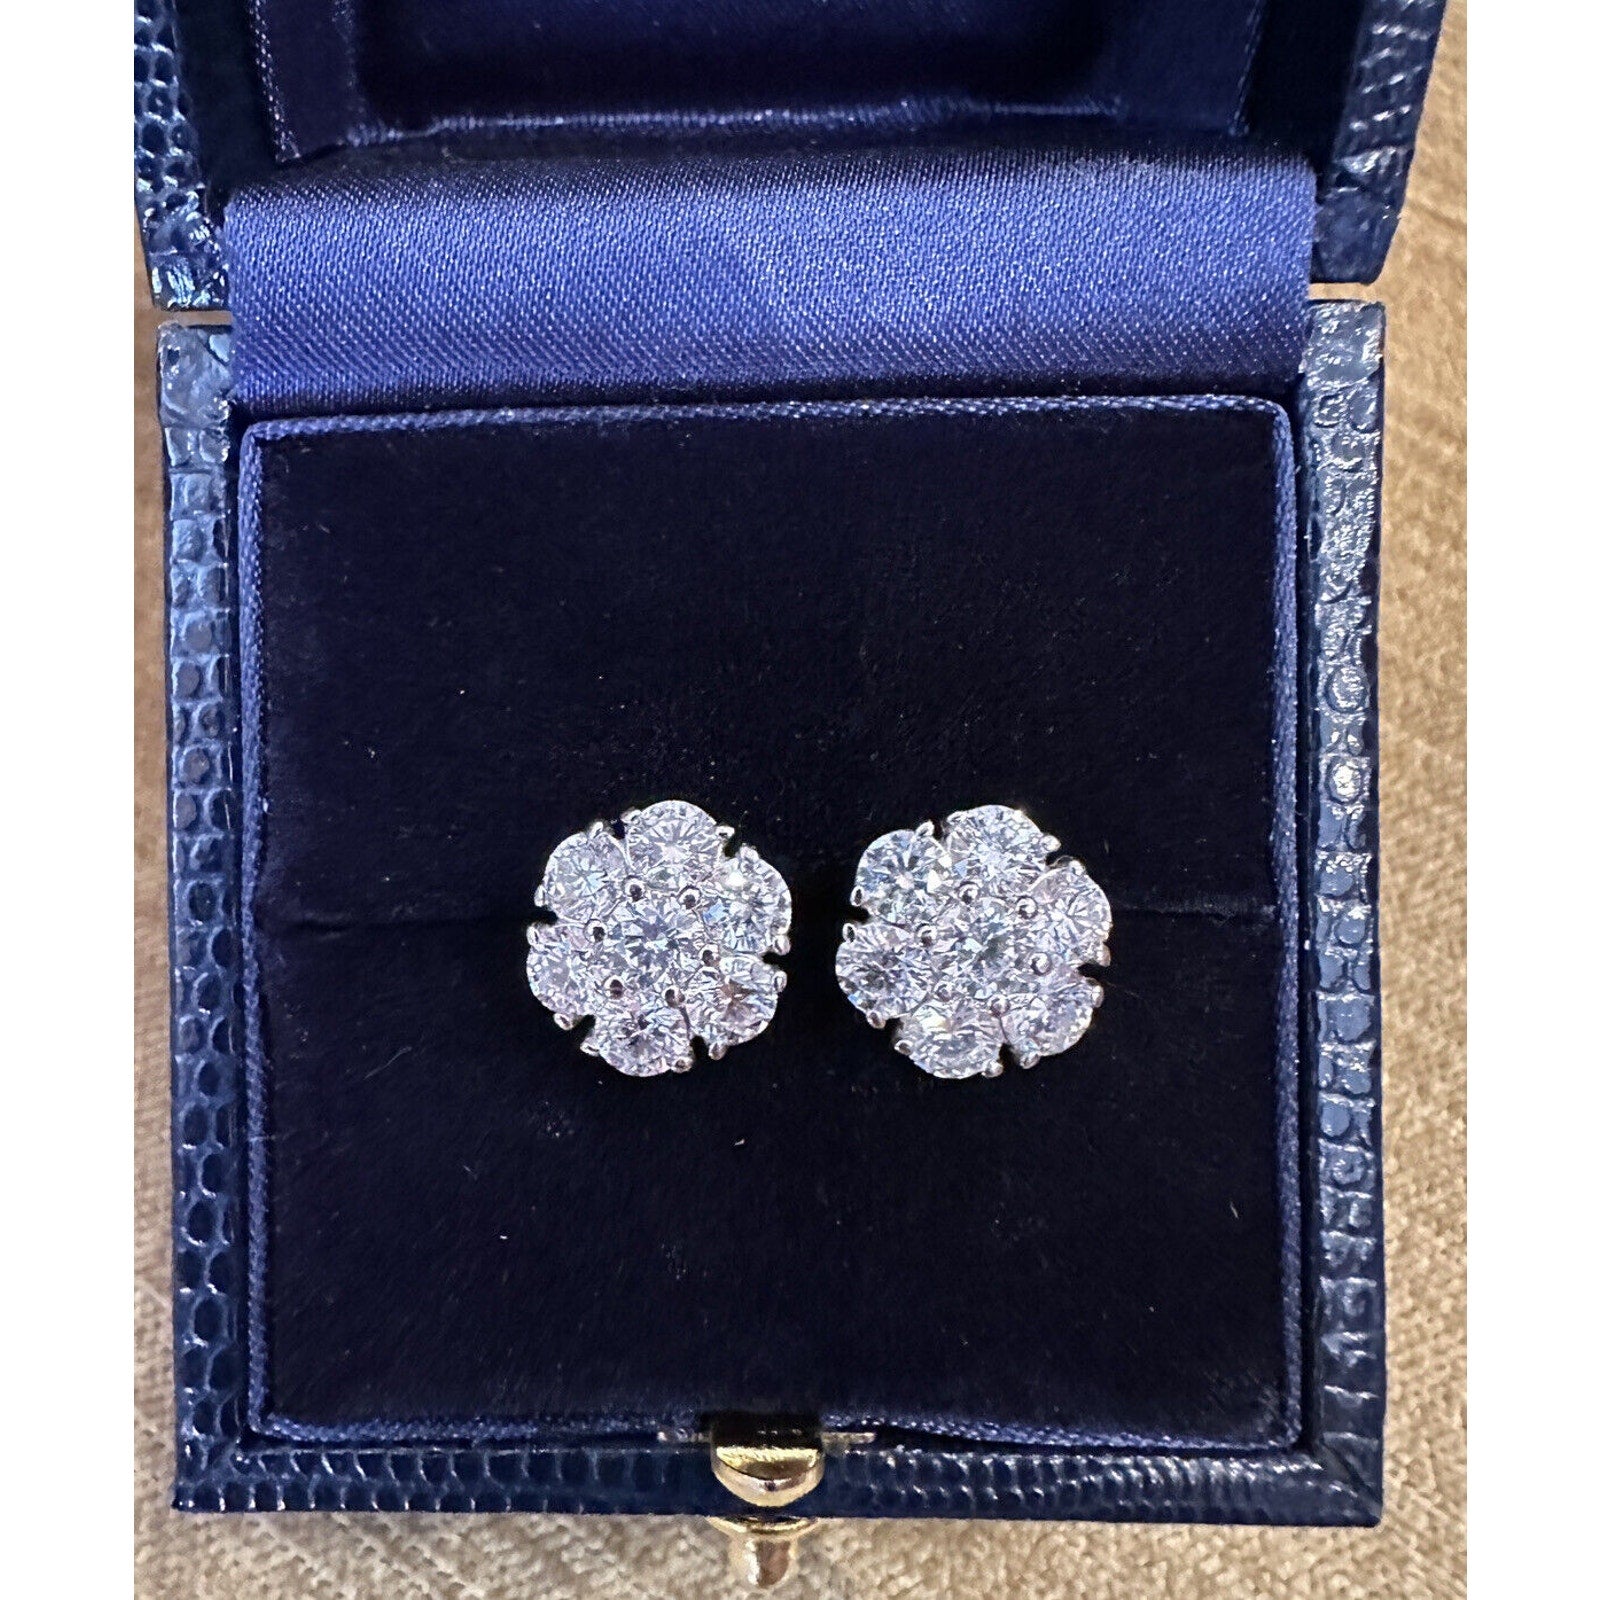 Diamond Floret Cluster Stud Earrings 3.10 cttw in 14k White Gold- HM2412B